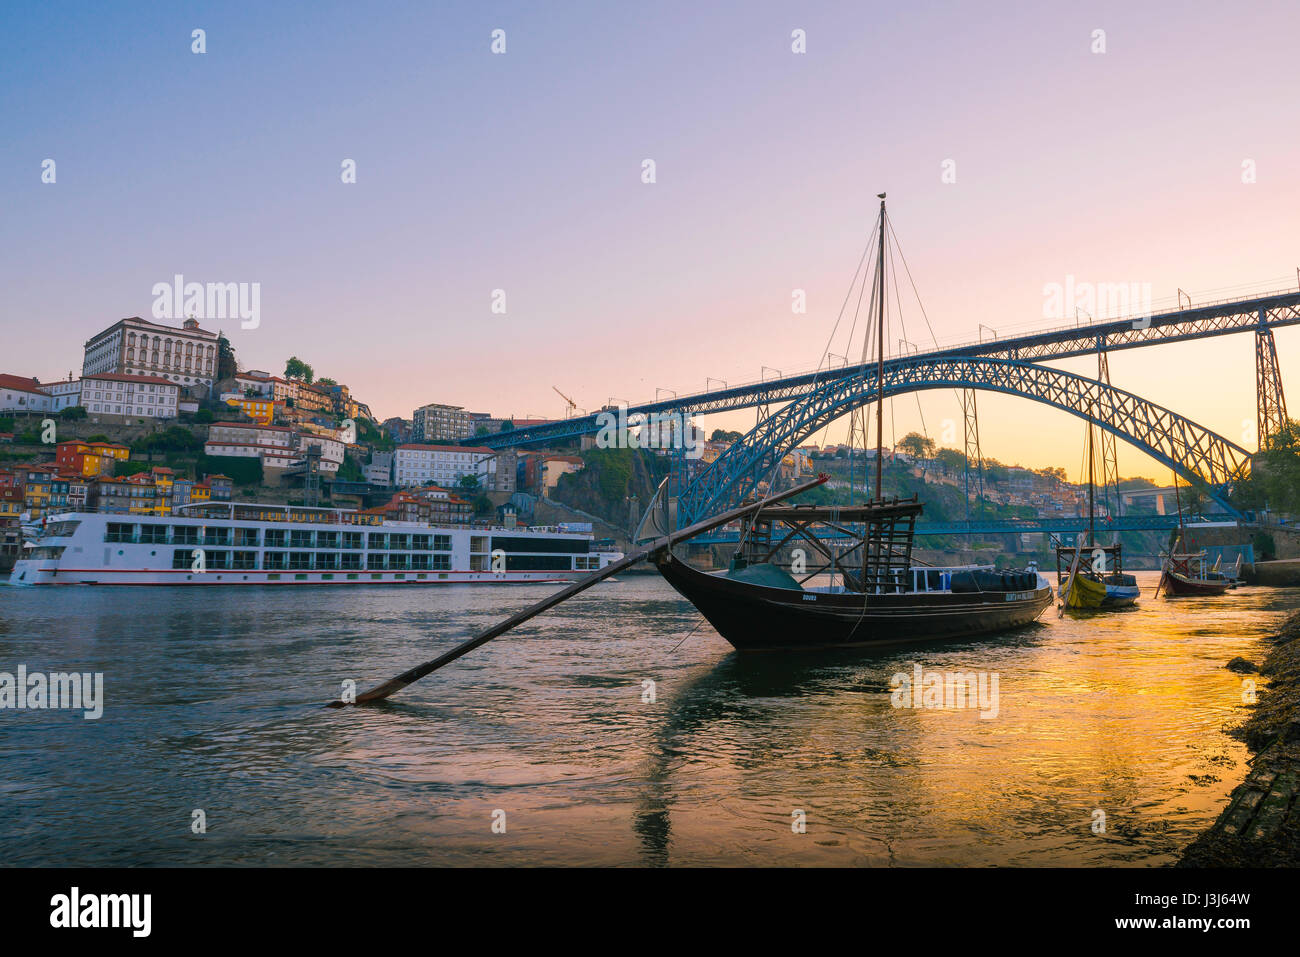 Croisière Porto Portugal, vue à l'aube d'un bateau de croisière touristique naviguant le long du fleuve Douro dans le centre de la ville de Porto, Portugal. Banque D'Images